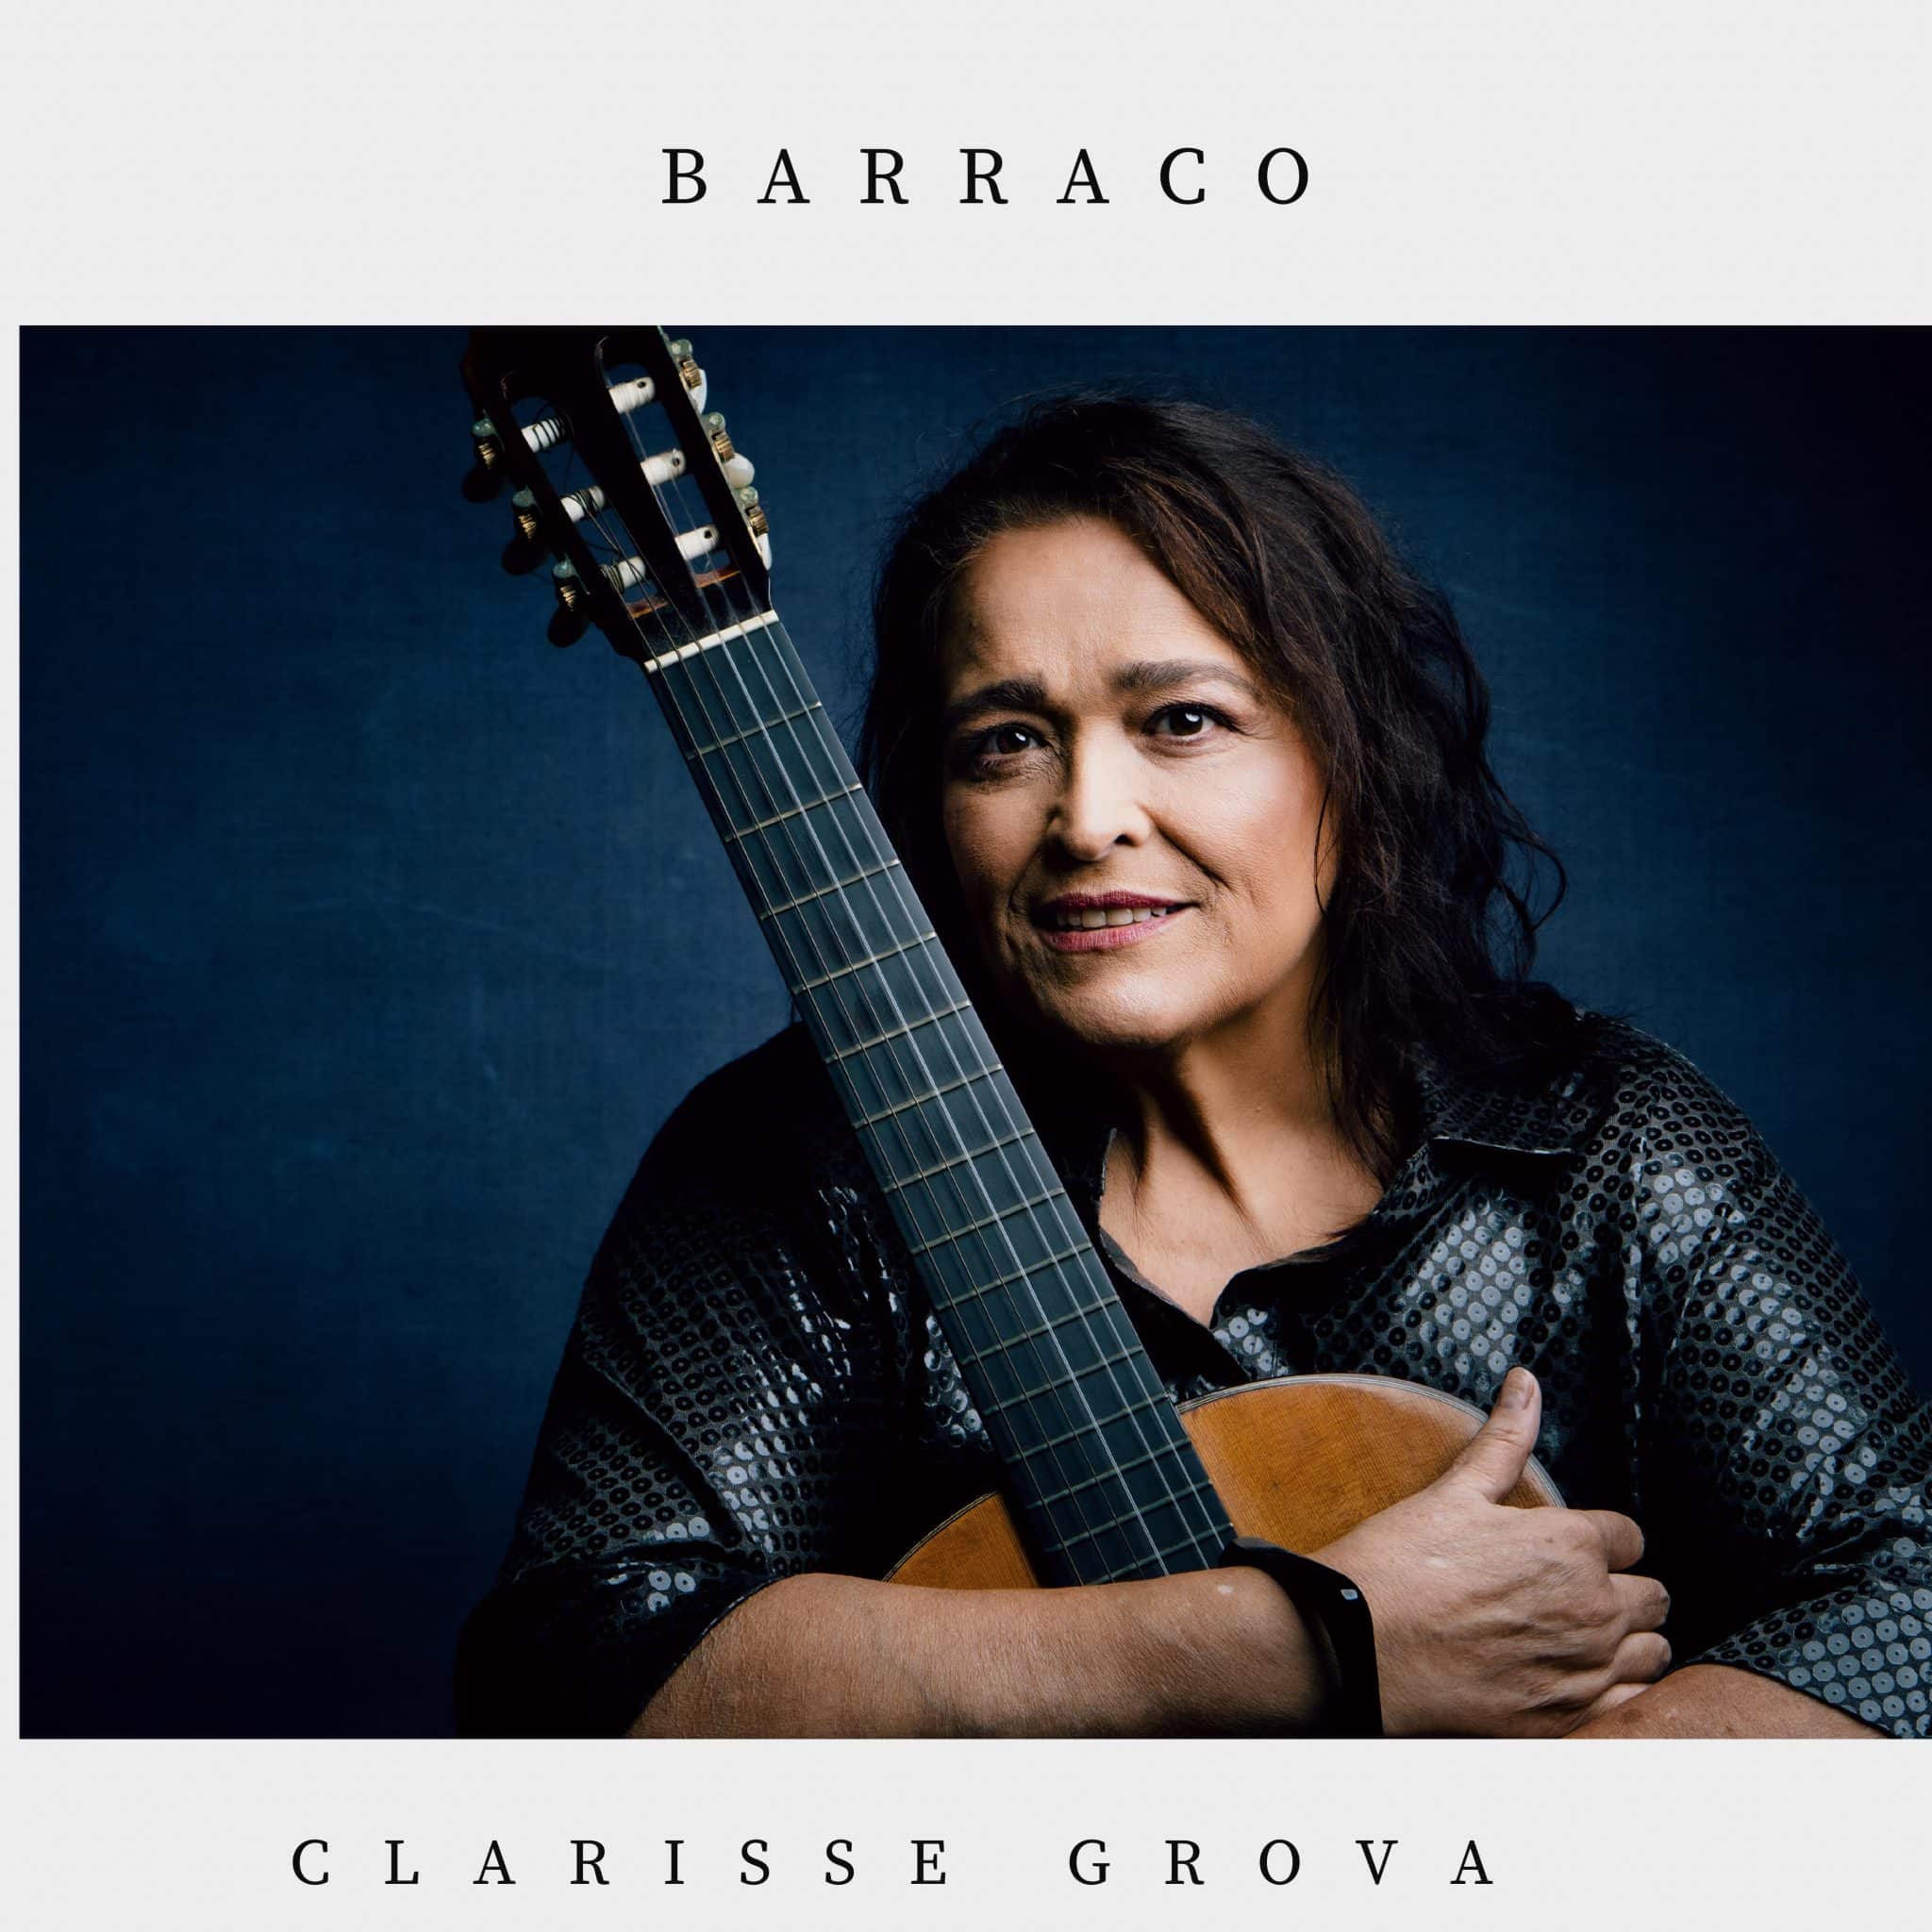 revistaprosaversoearte.com - Clarisse Grova lança single 'Barraco', sua parceria com Léo Nogueira